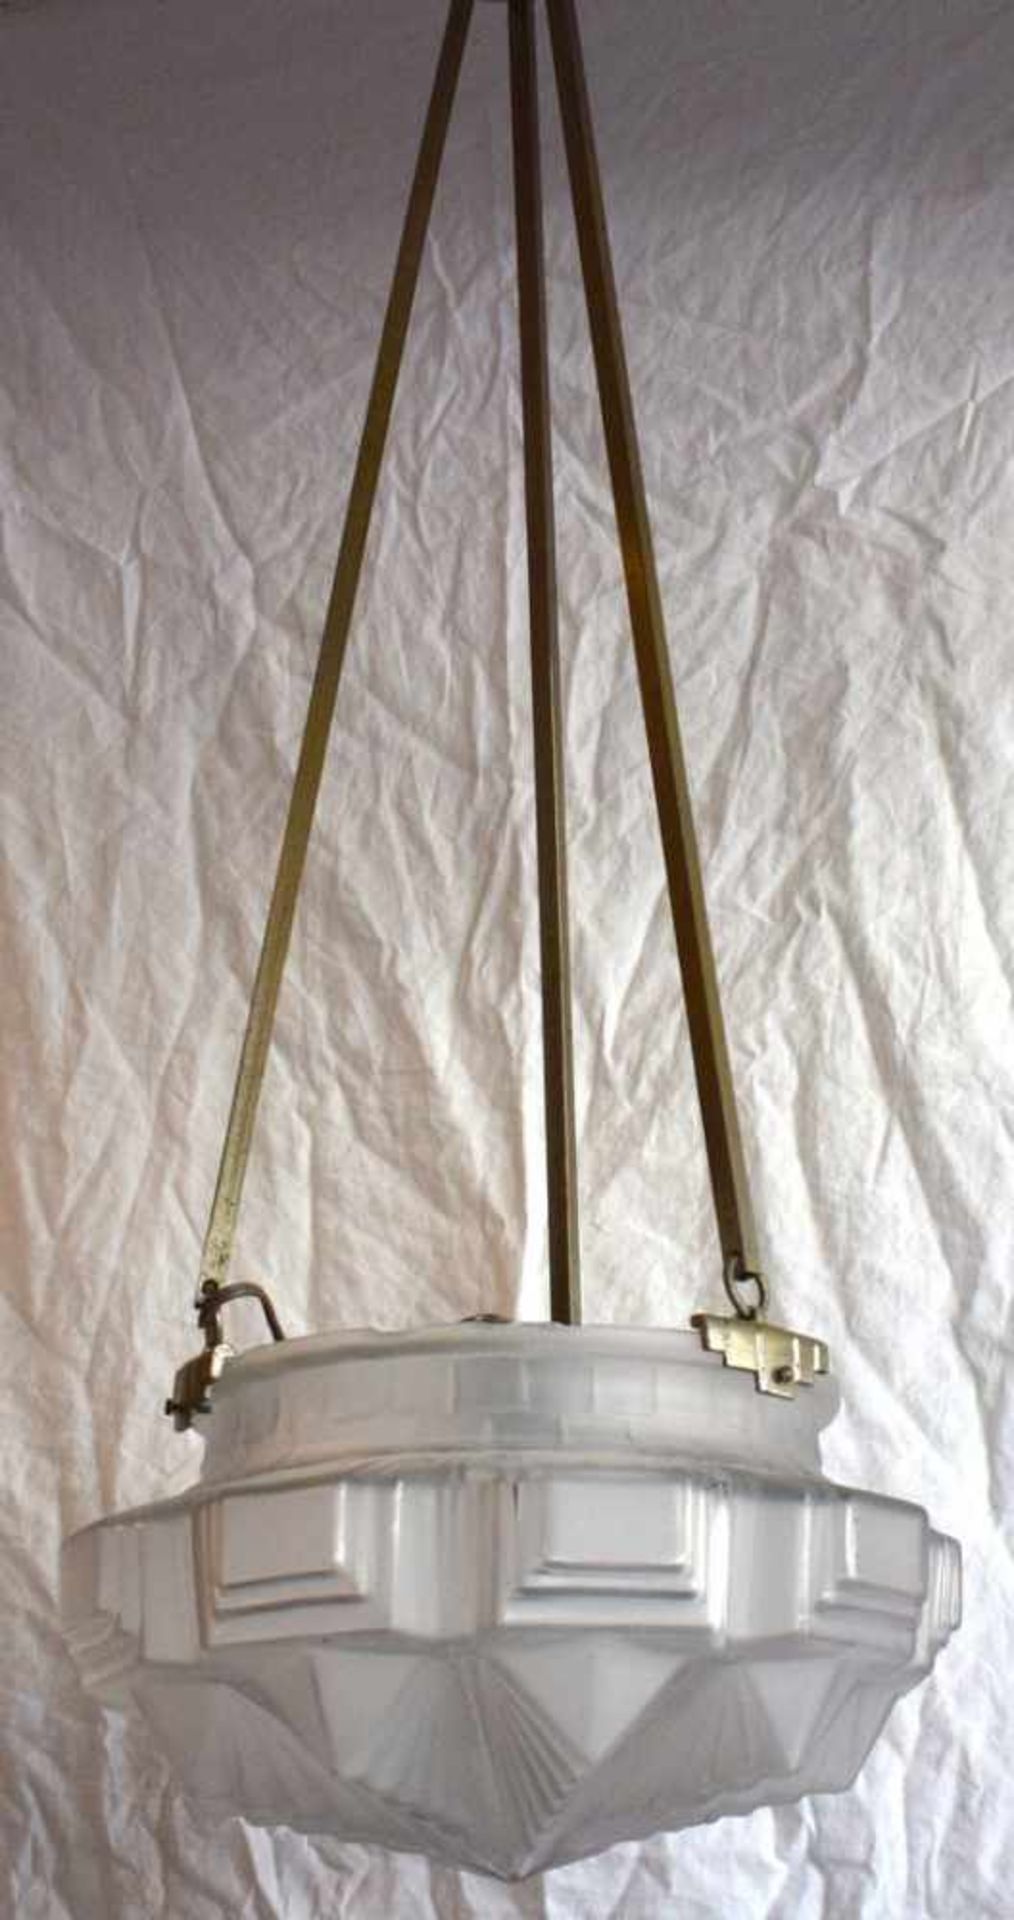 Art Deco Deckenlampe 1-lichtig, drei Metallstäbe, runder Glasschirm, verziert, H 88 cm, Dm 34 cm,